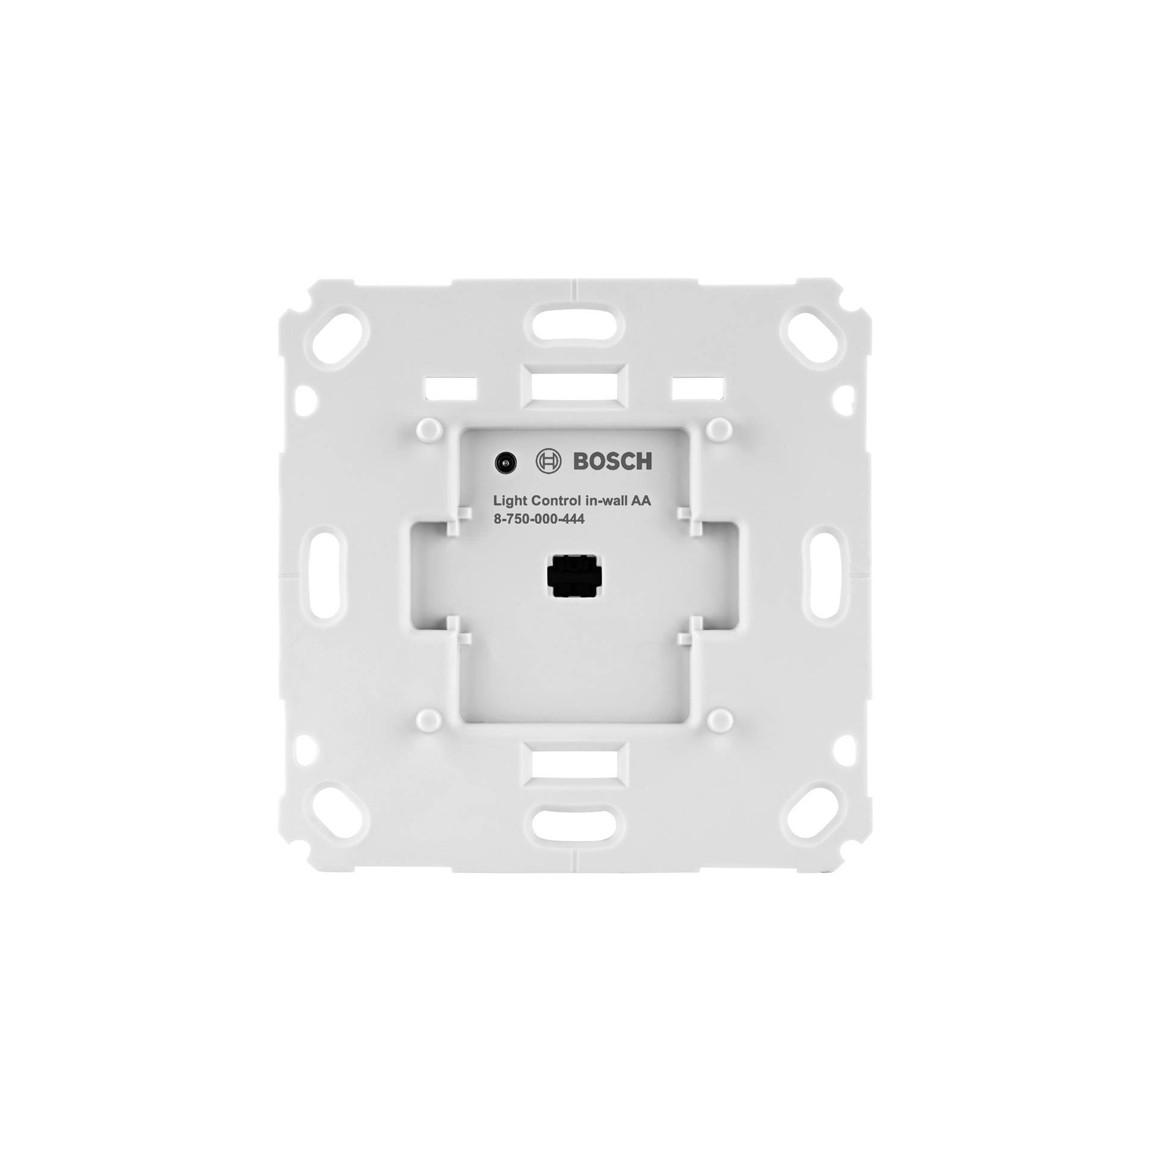 Bosch Smart Home - Starter Set Lichtsteuerung mit 3 Unterputz-Aktoren - Aktor frontal